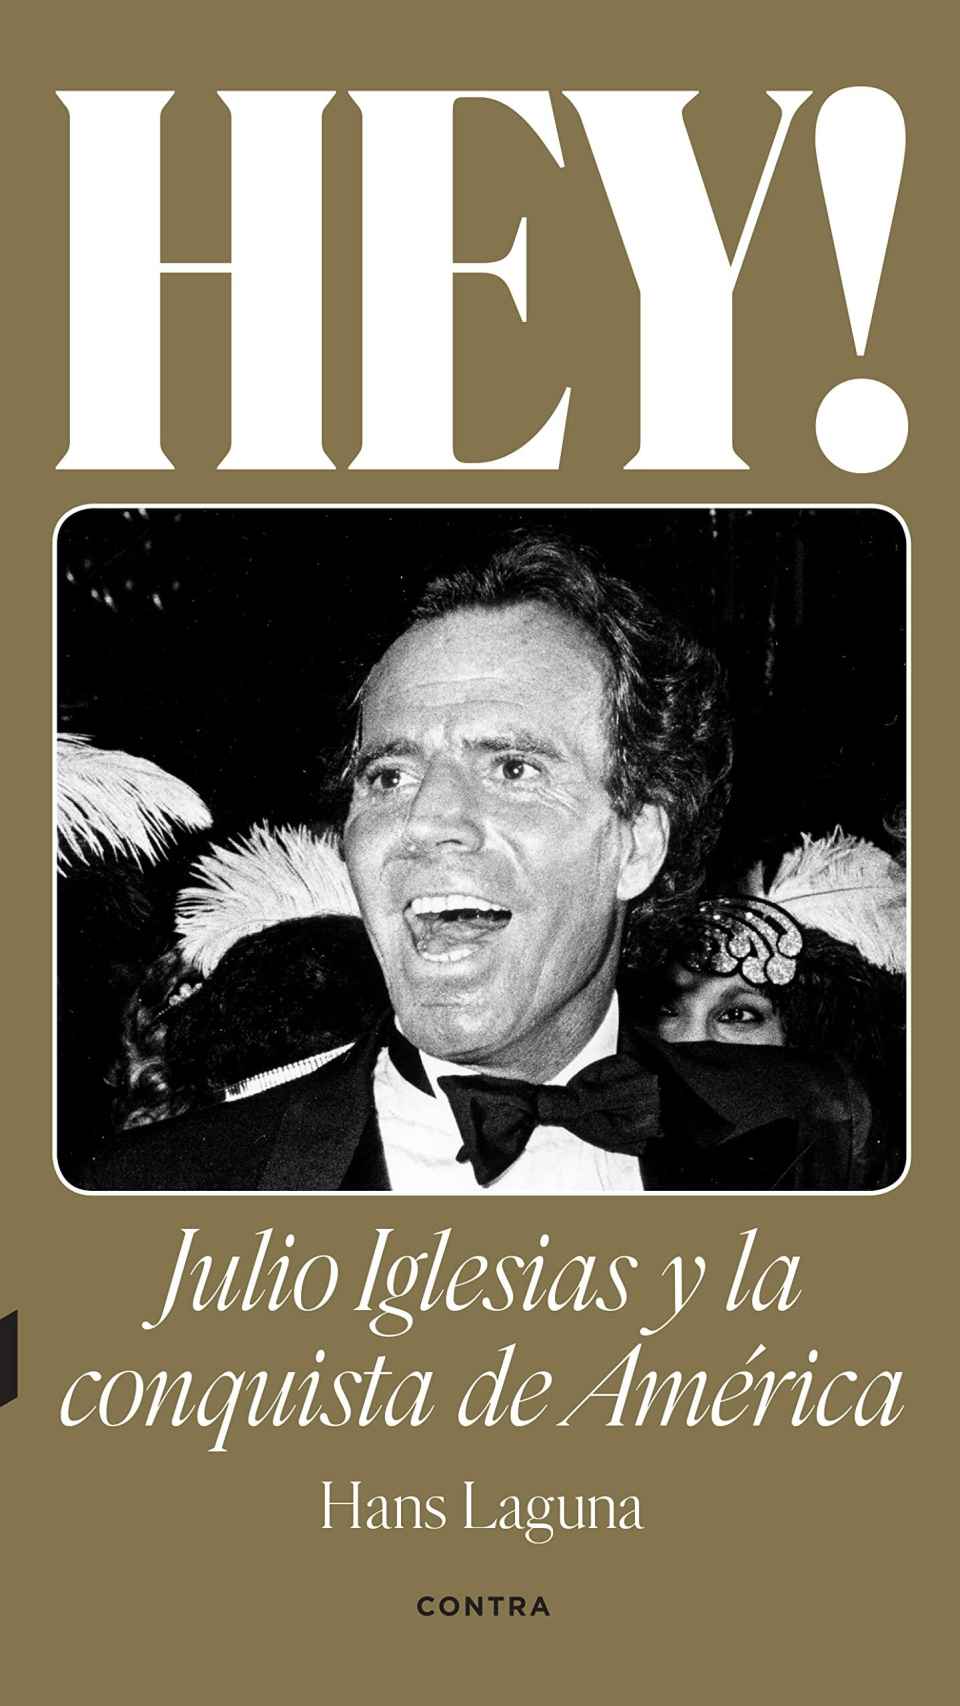 Portada del libro 'Hey, Julio Iglesias y la conquista de América'.